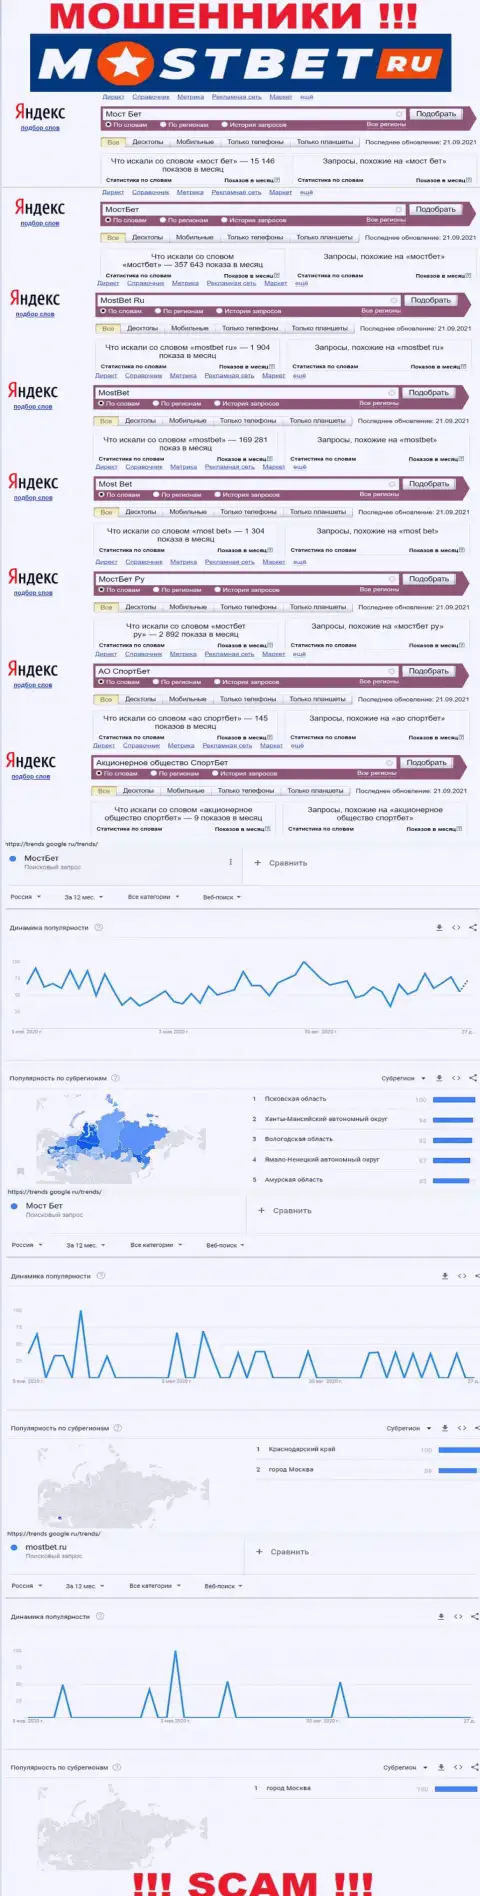 Насколько лохотрон MostBet Ru популярен во всемирной internet сети ?